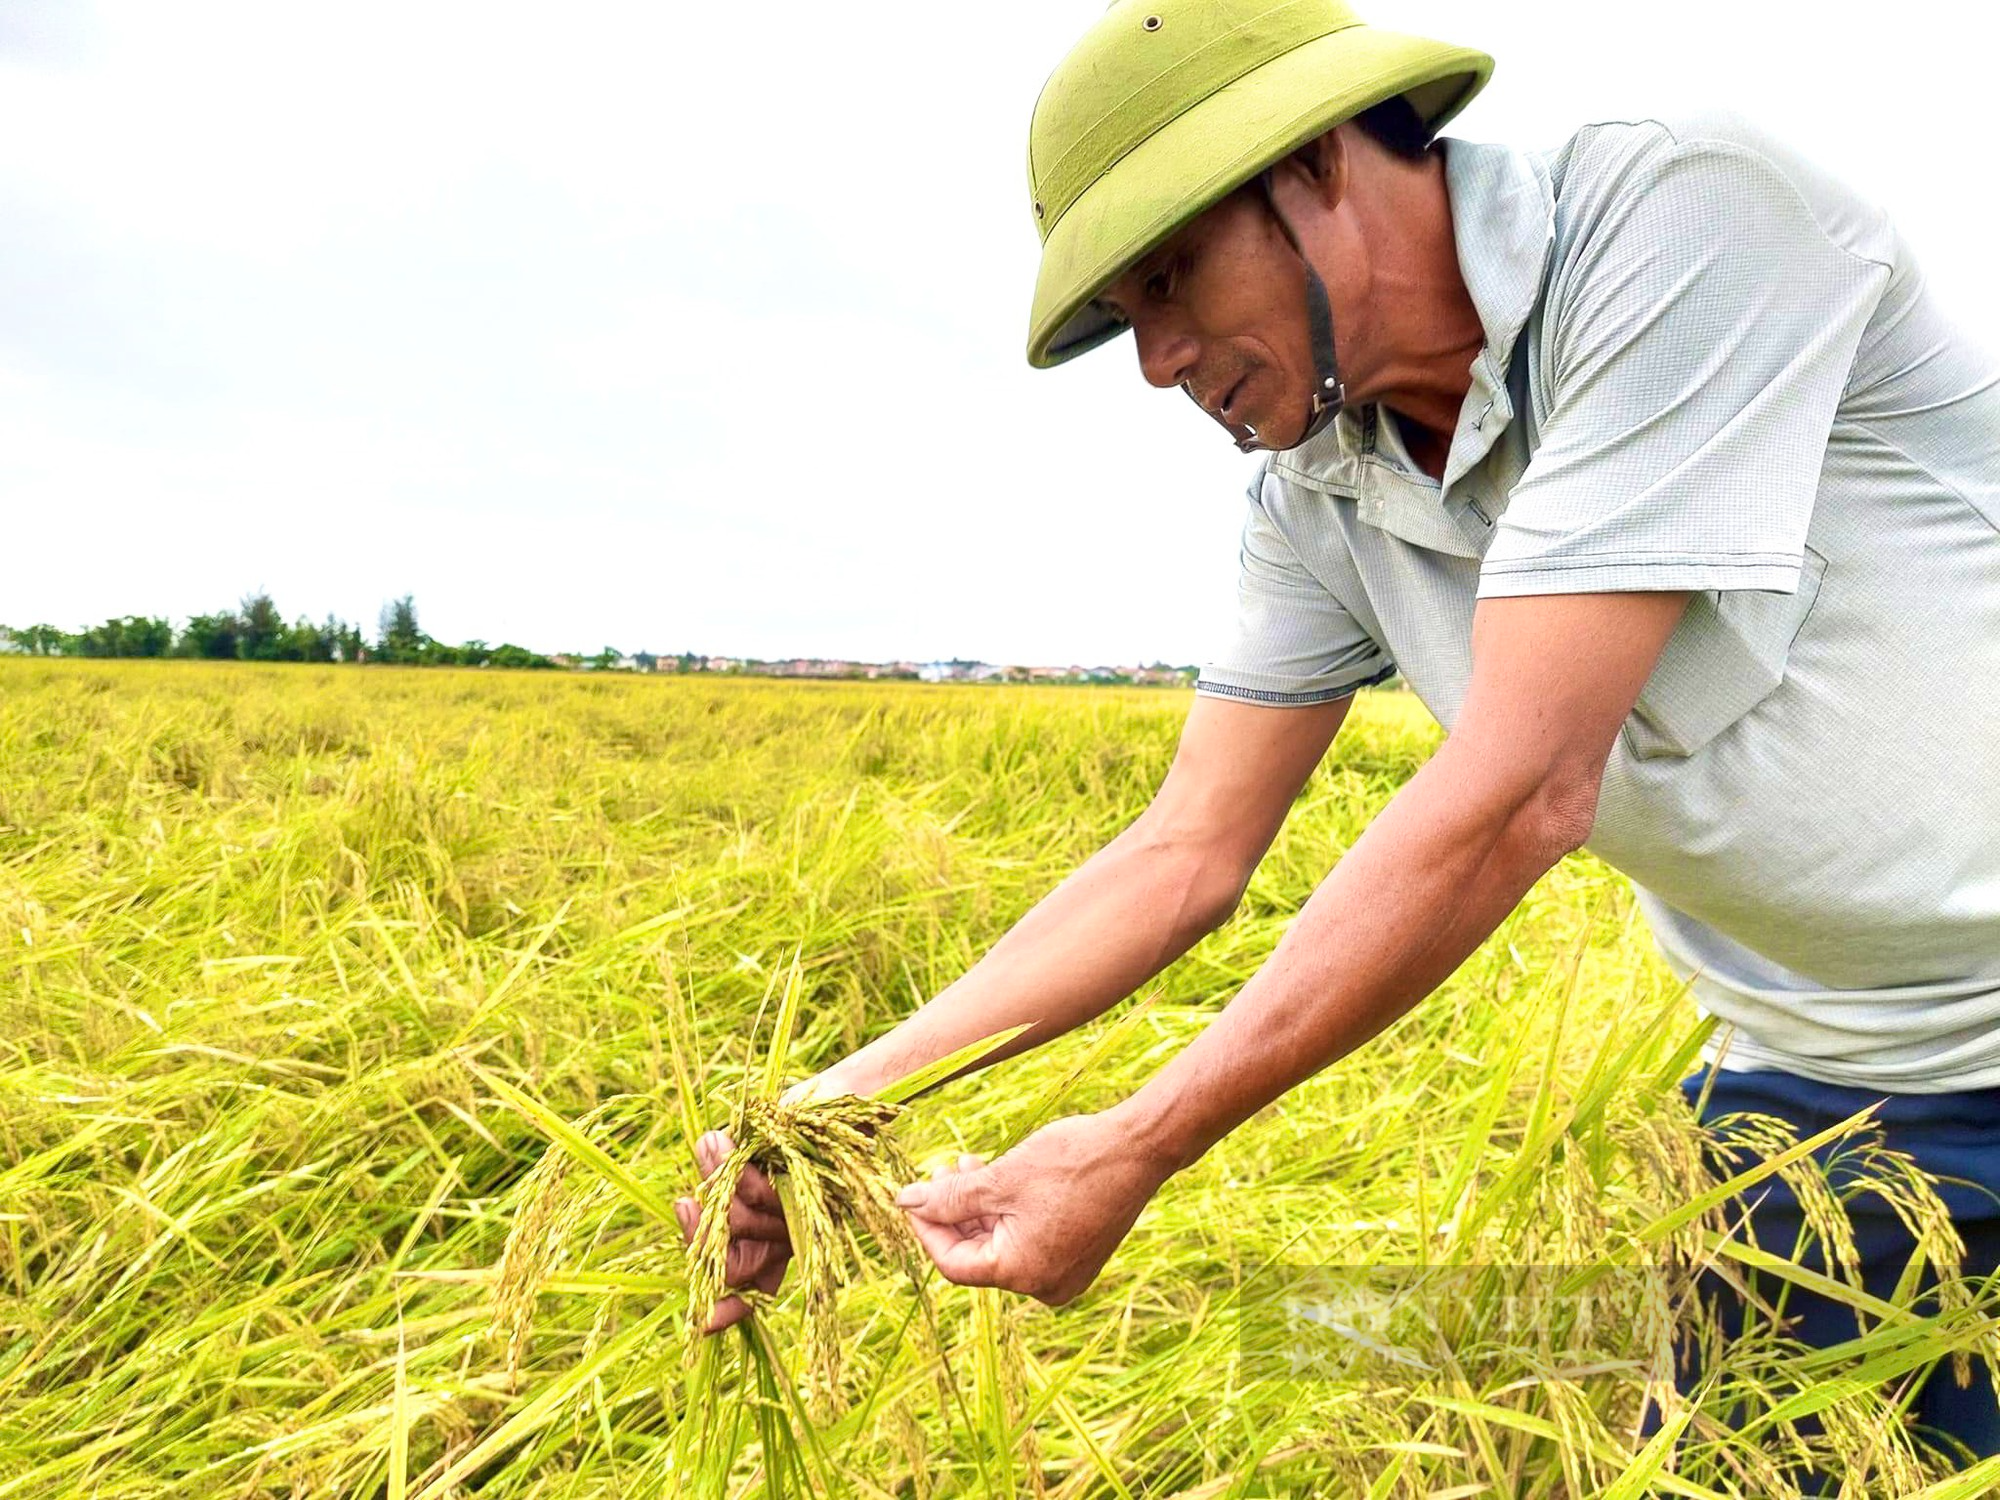 Quảng Bình: Ngày lễ nông dân ra đồng đau xót nhìn lúa gần thu hoạch ngã rạp - Ảnh 1.